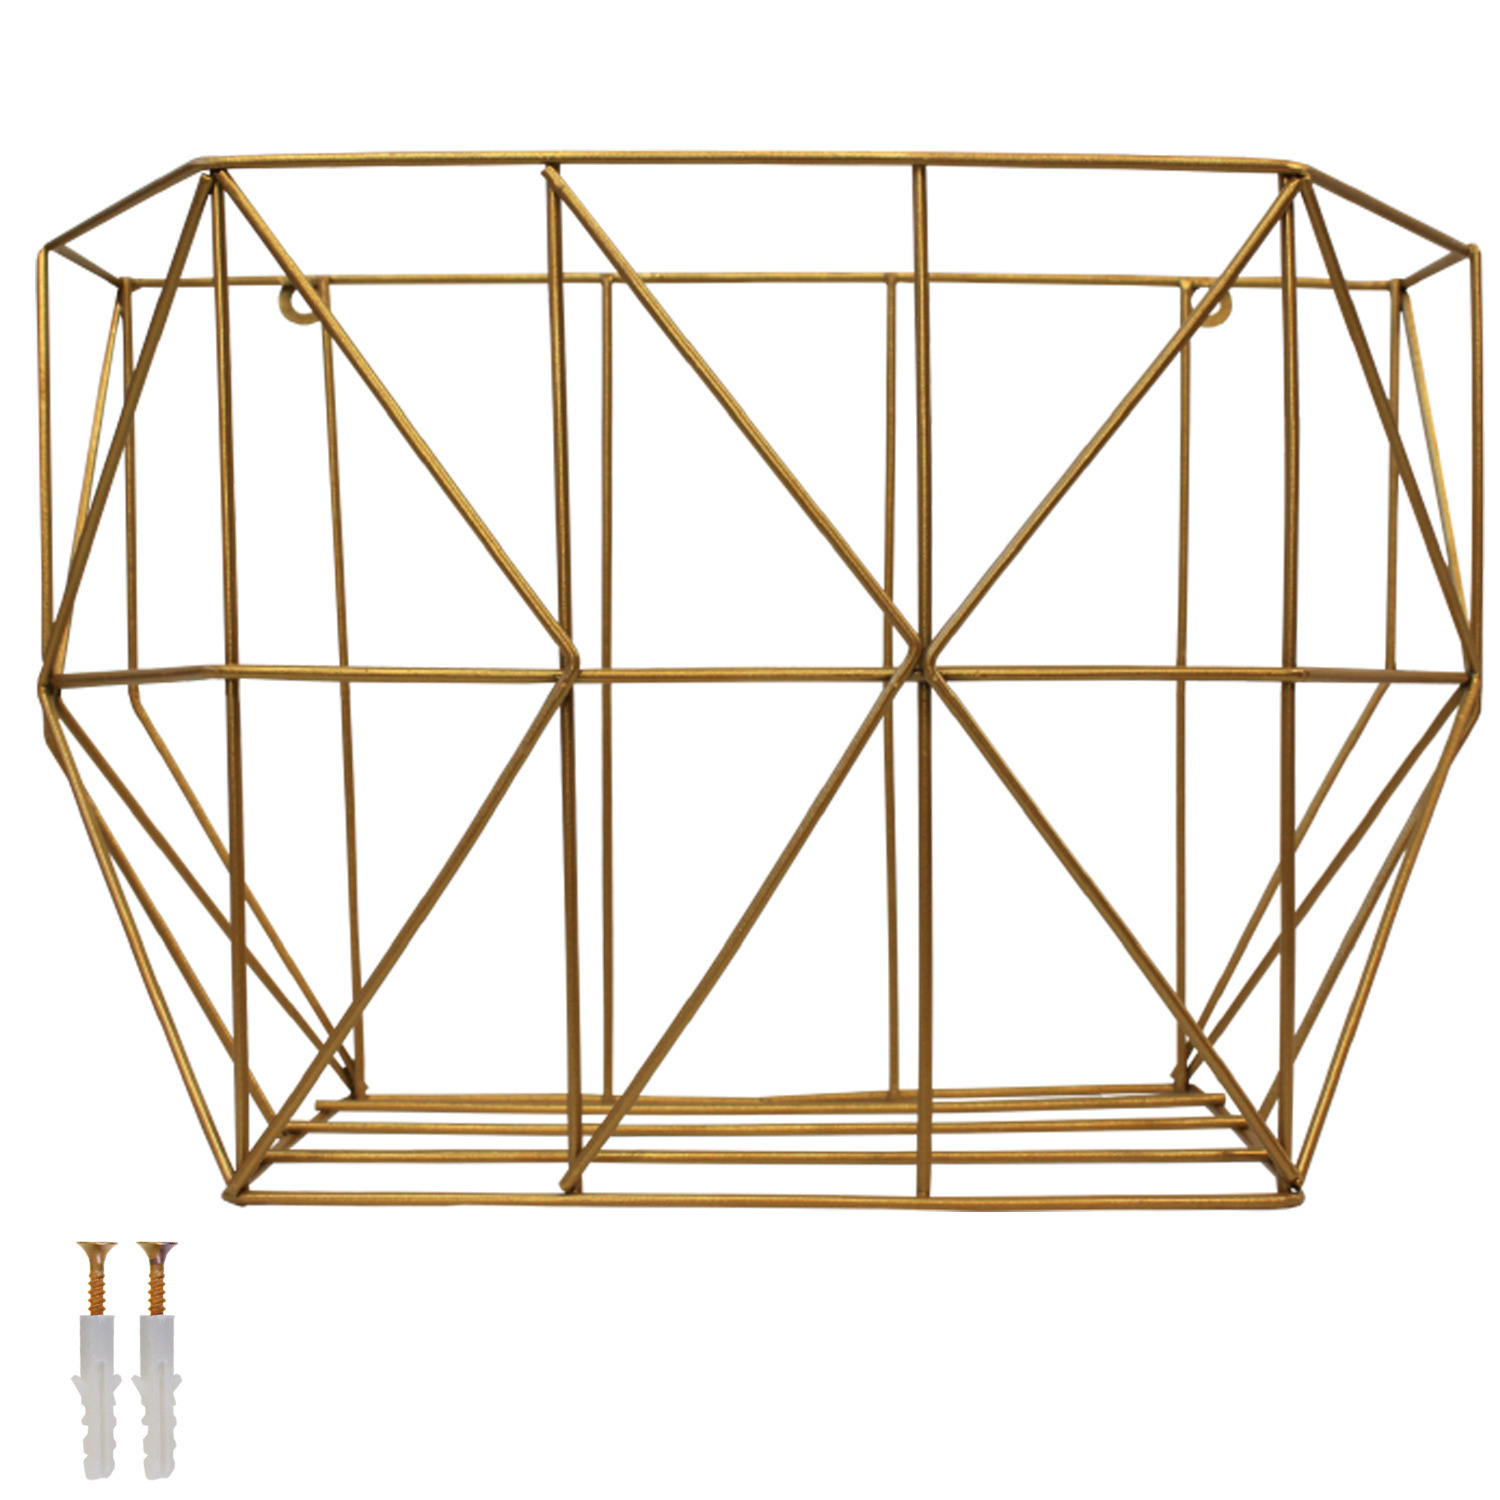 Hanging Fruit Basket Metal Wire Storage Organizer Wall Basket for Kitchen Gold - Large